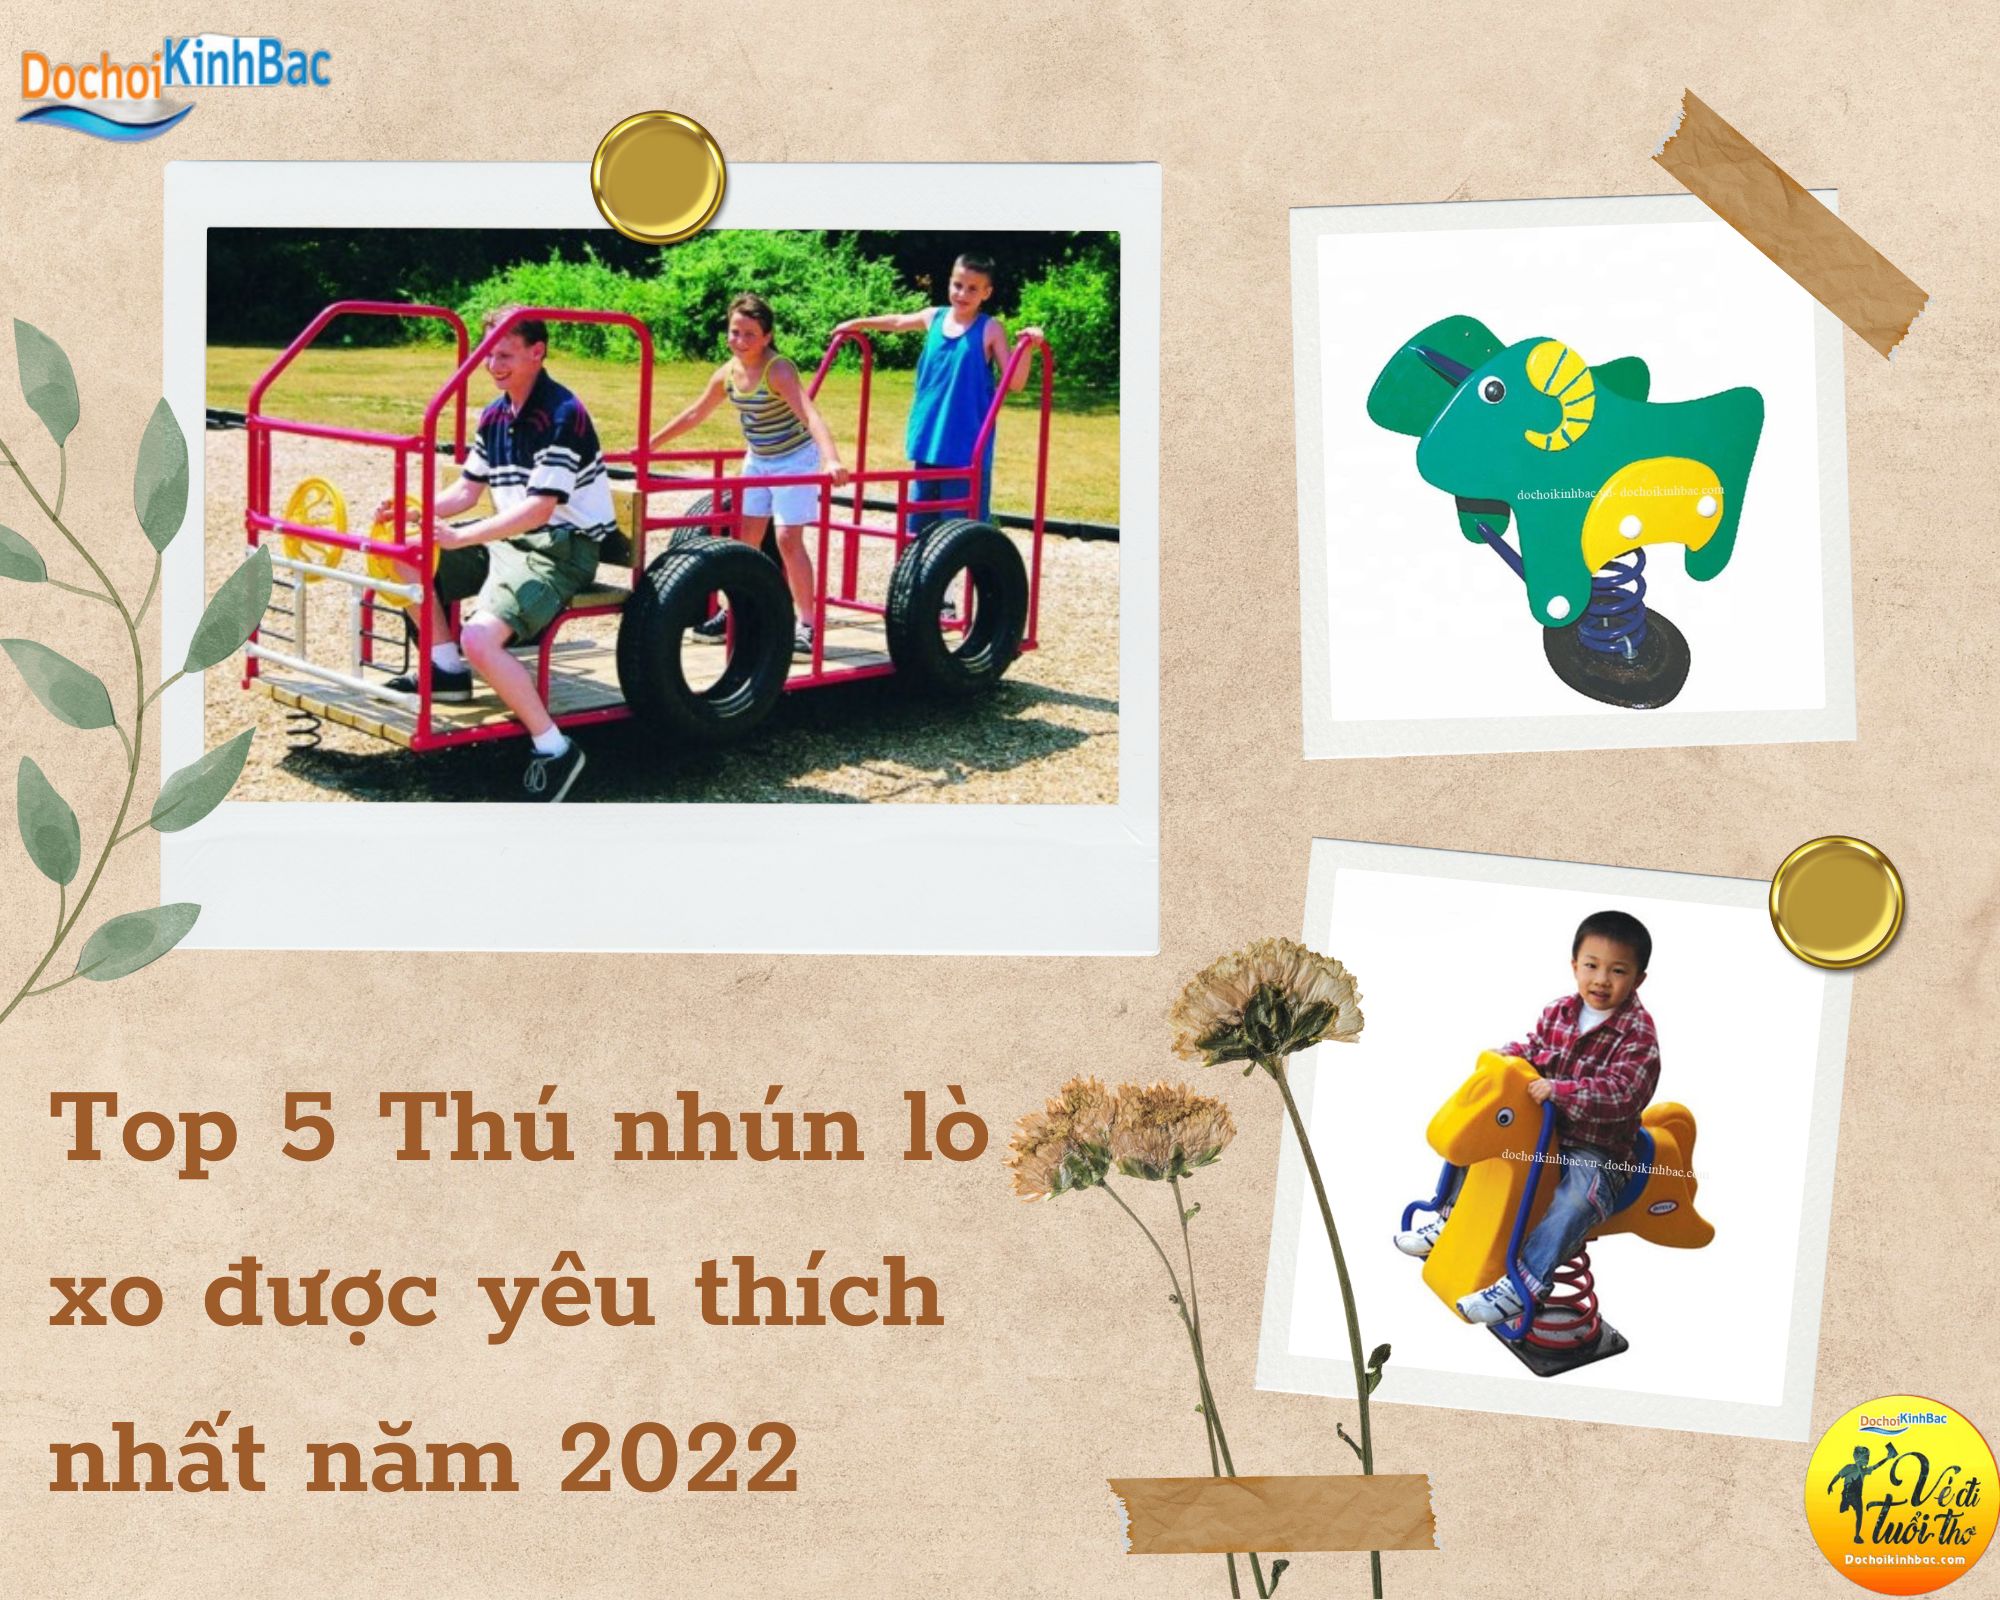 Top 5 Thú nhún lò xo được yêu thích nhất năm 2022 tại Yên Sơn, Bảo Yên, Lào Cai